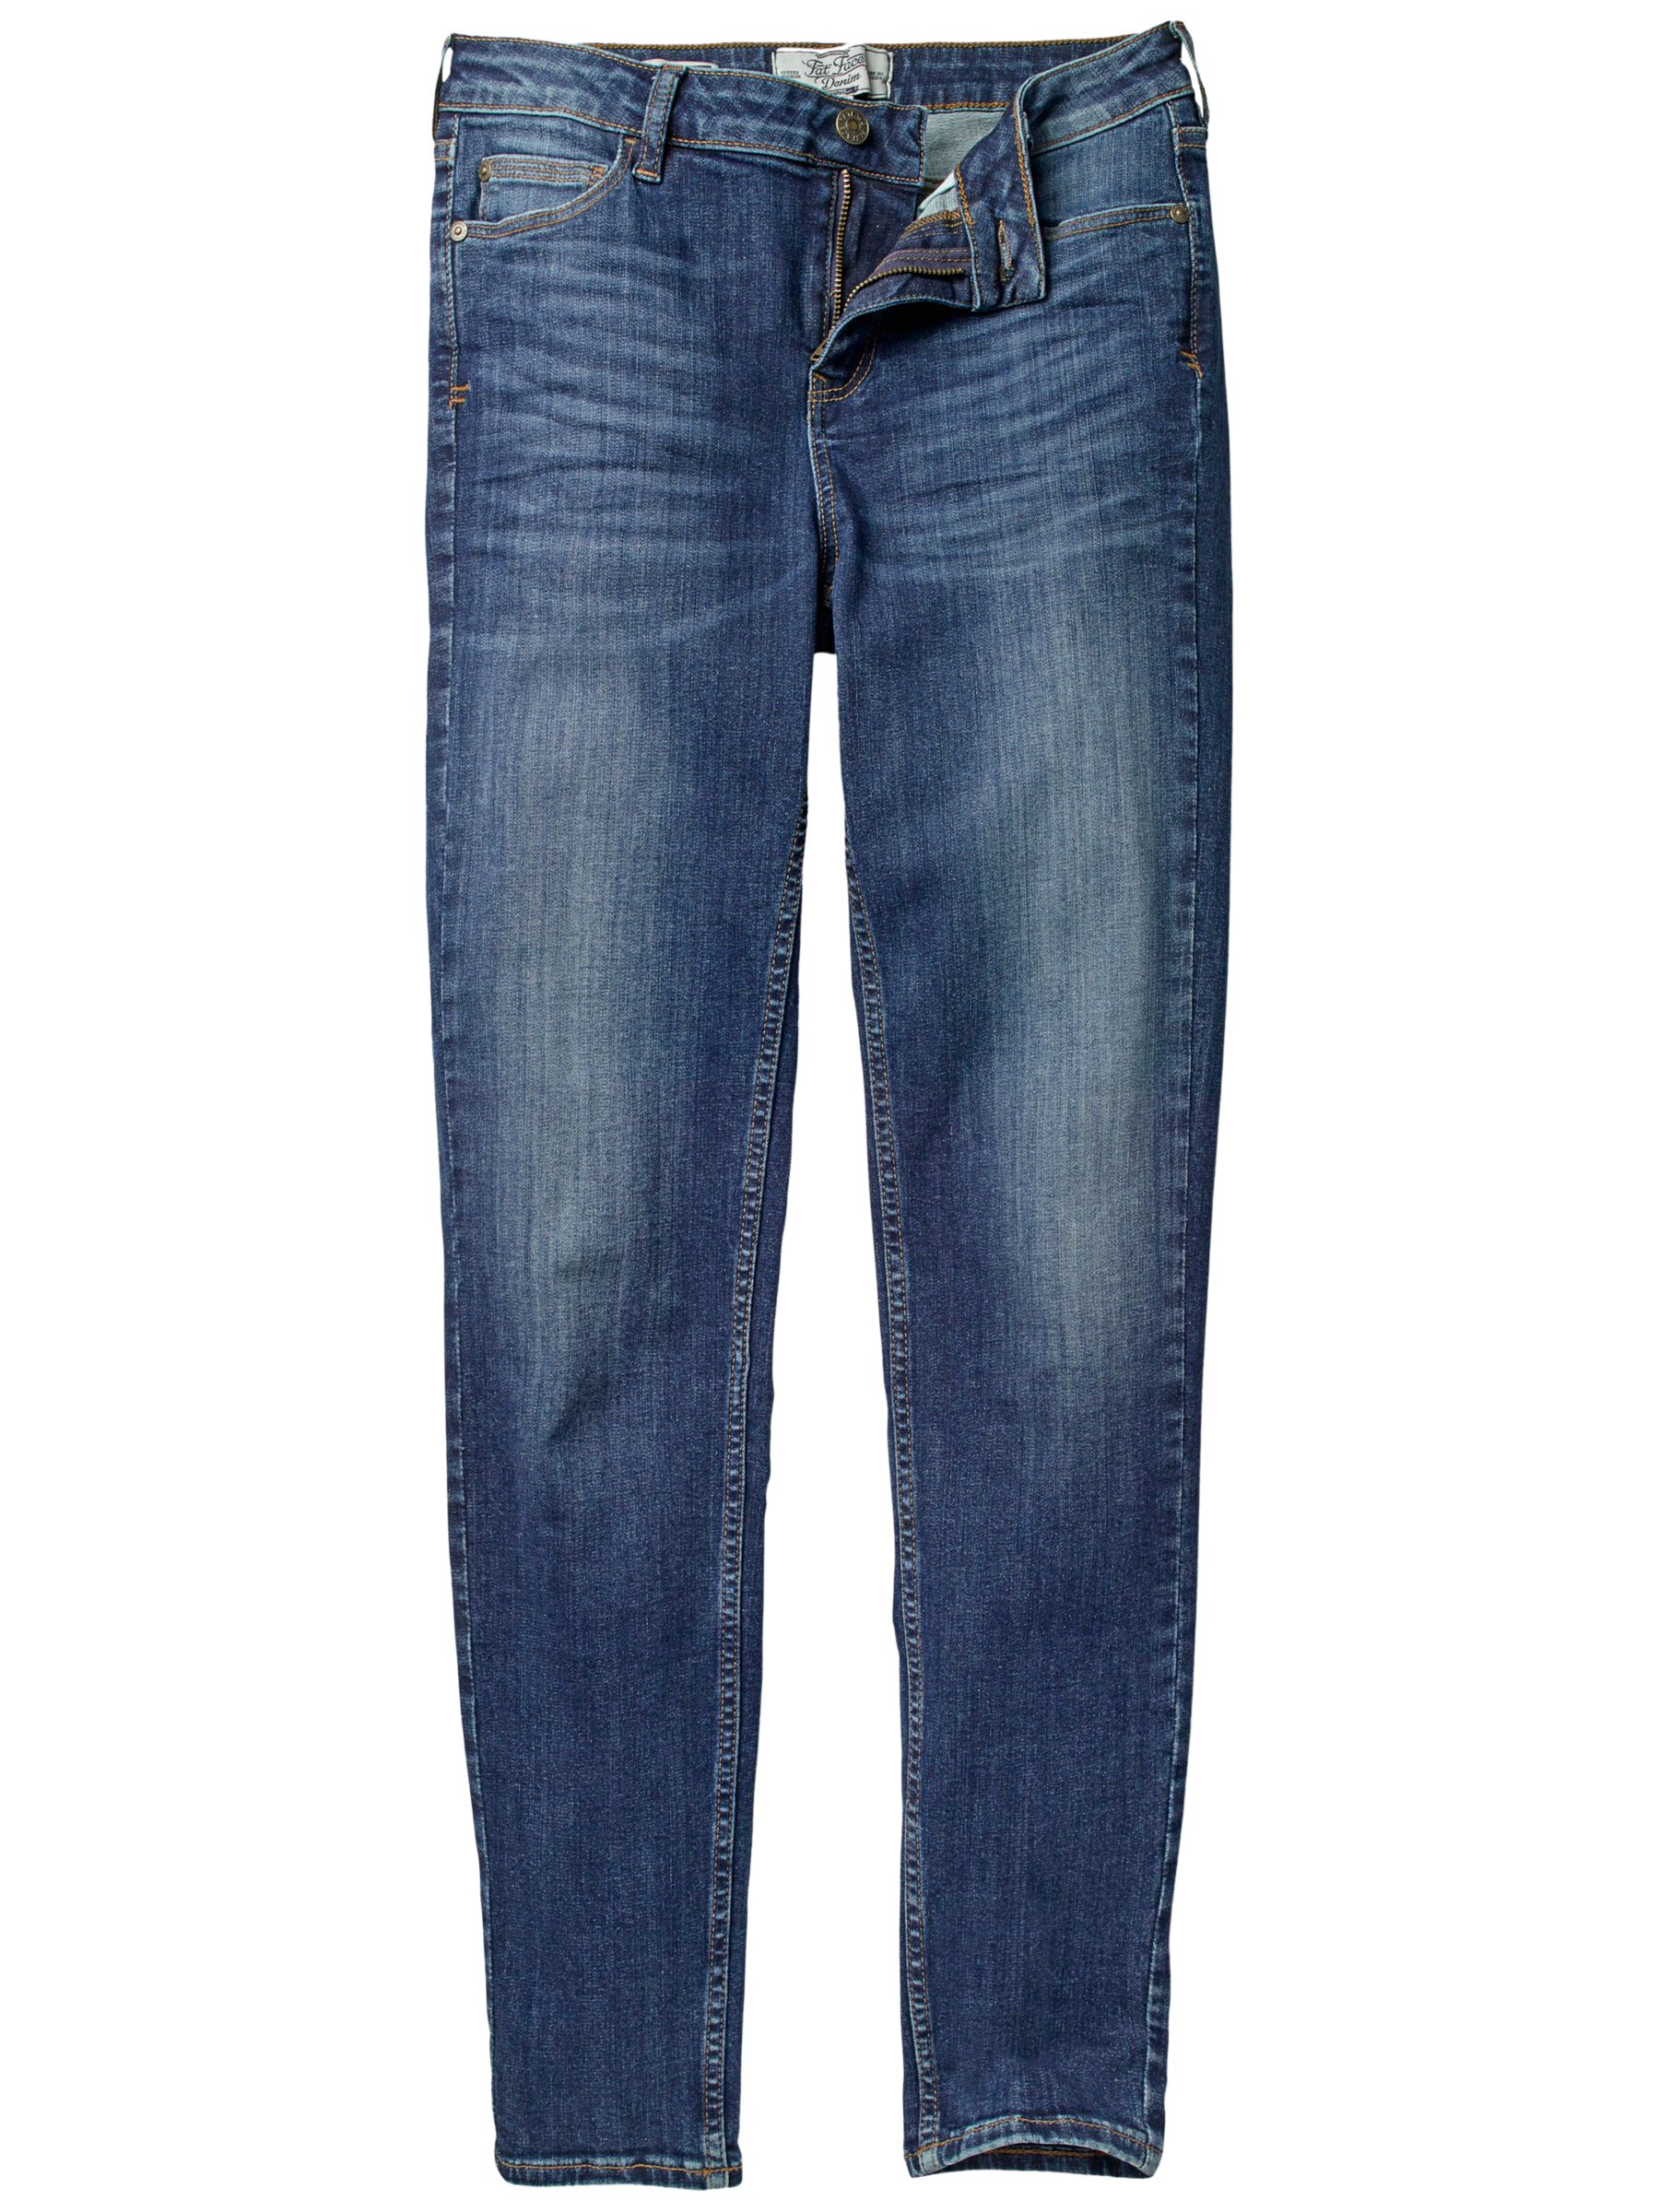 Fat Face Denim Super Skinny Jeans, Vintage Blue at John Lewis & Partners